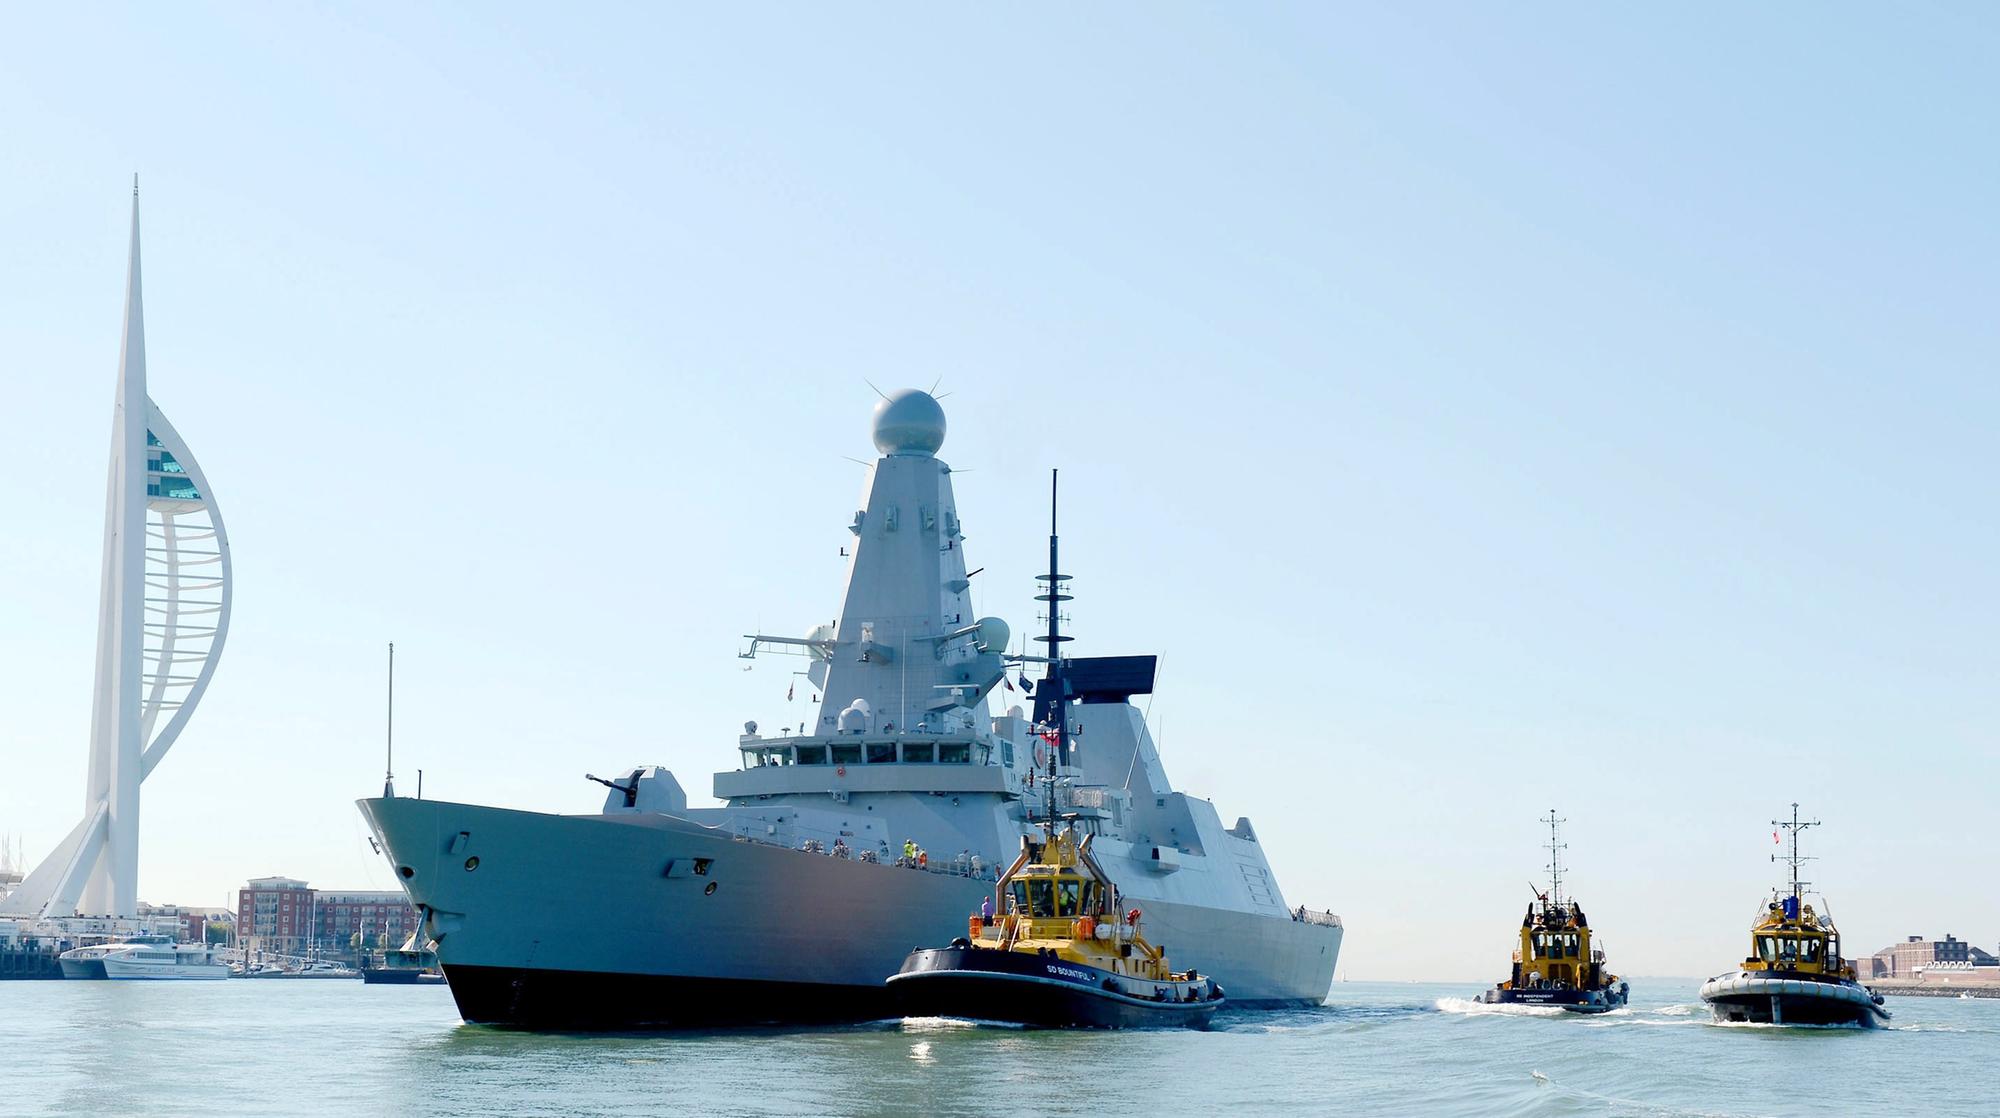 Russia Fires 'Warning' Shots at British Warship Near Crimea